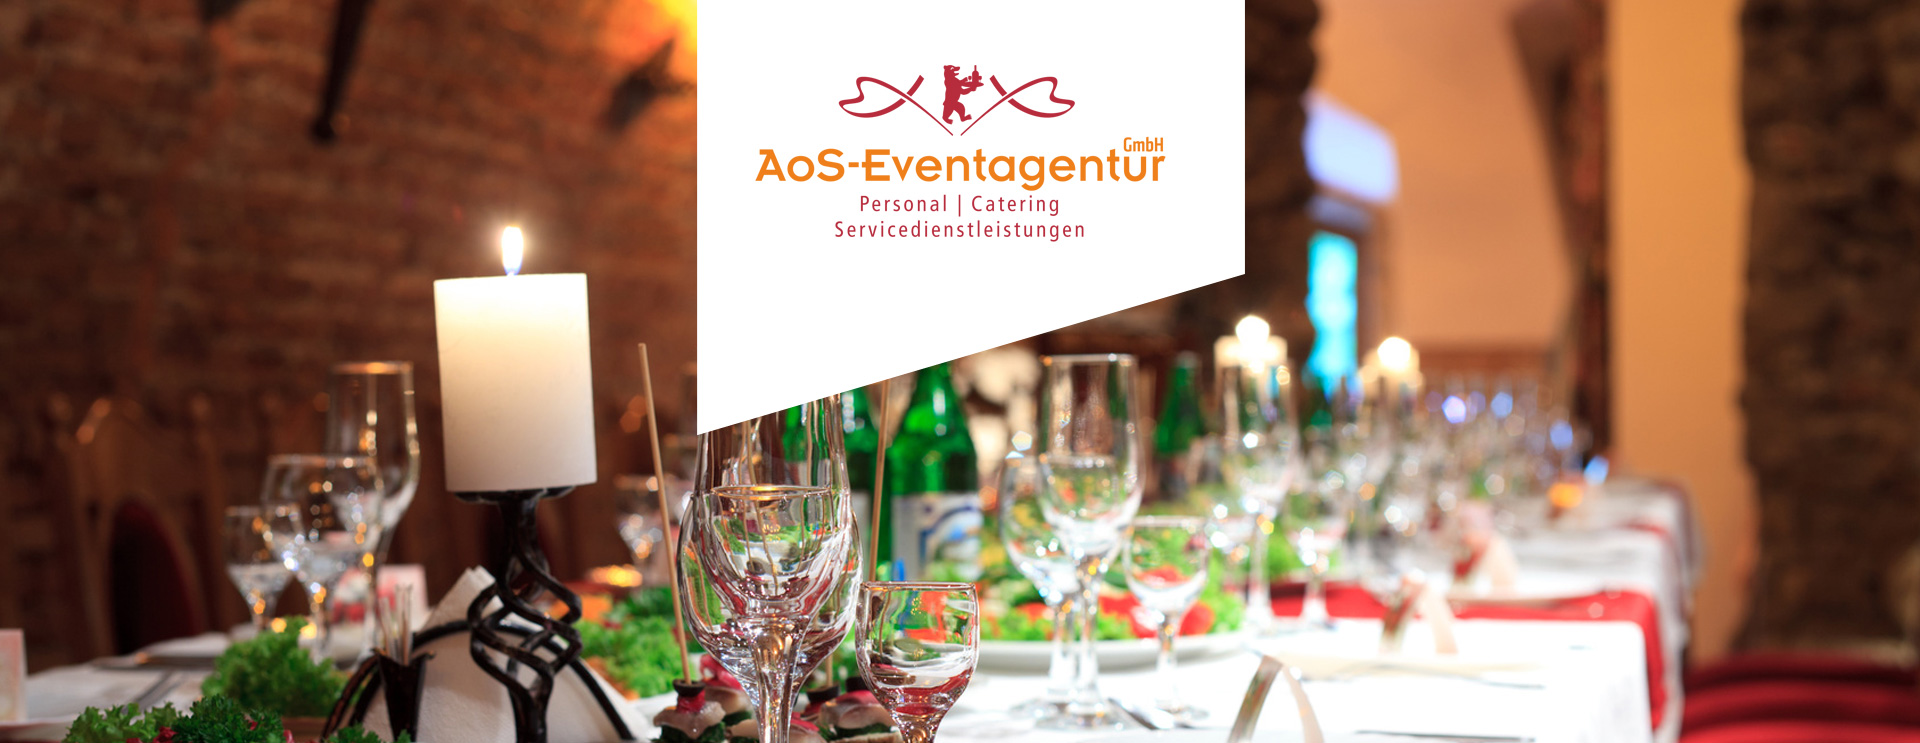 Service AoS Eventagentur catering servicedienstleistungen